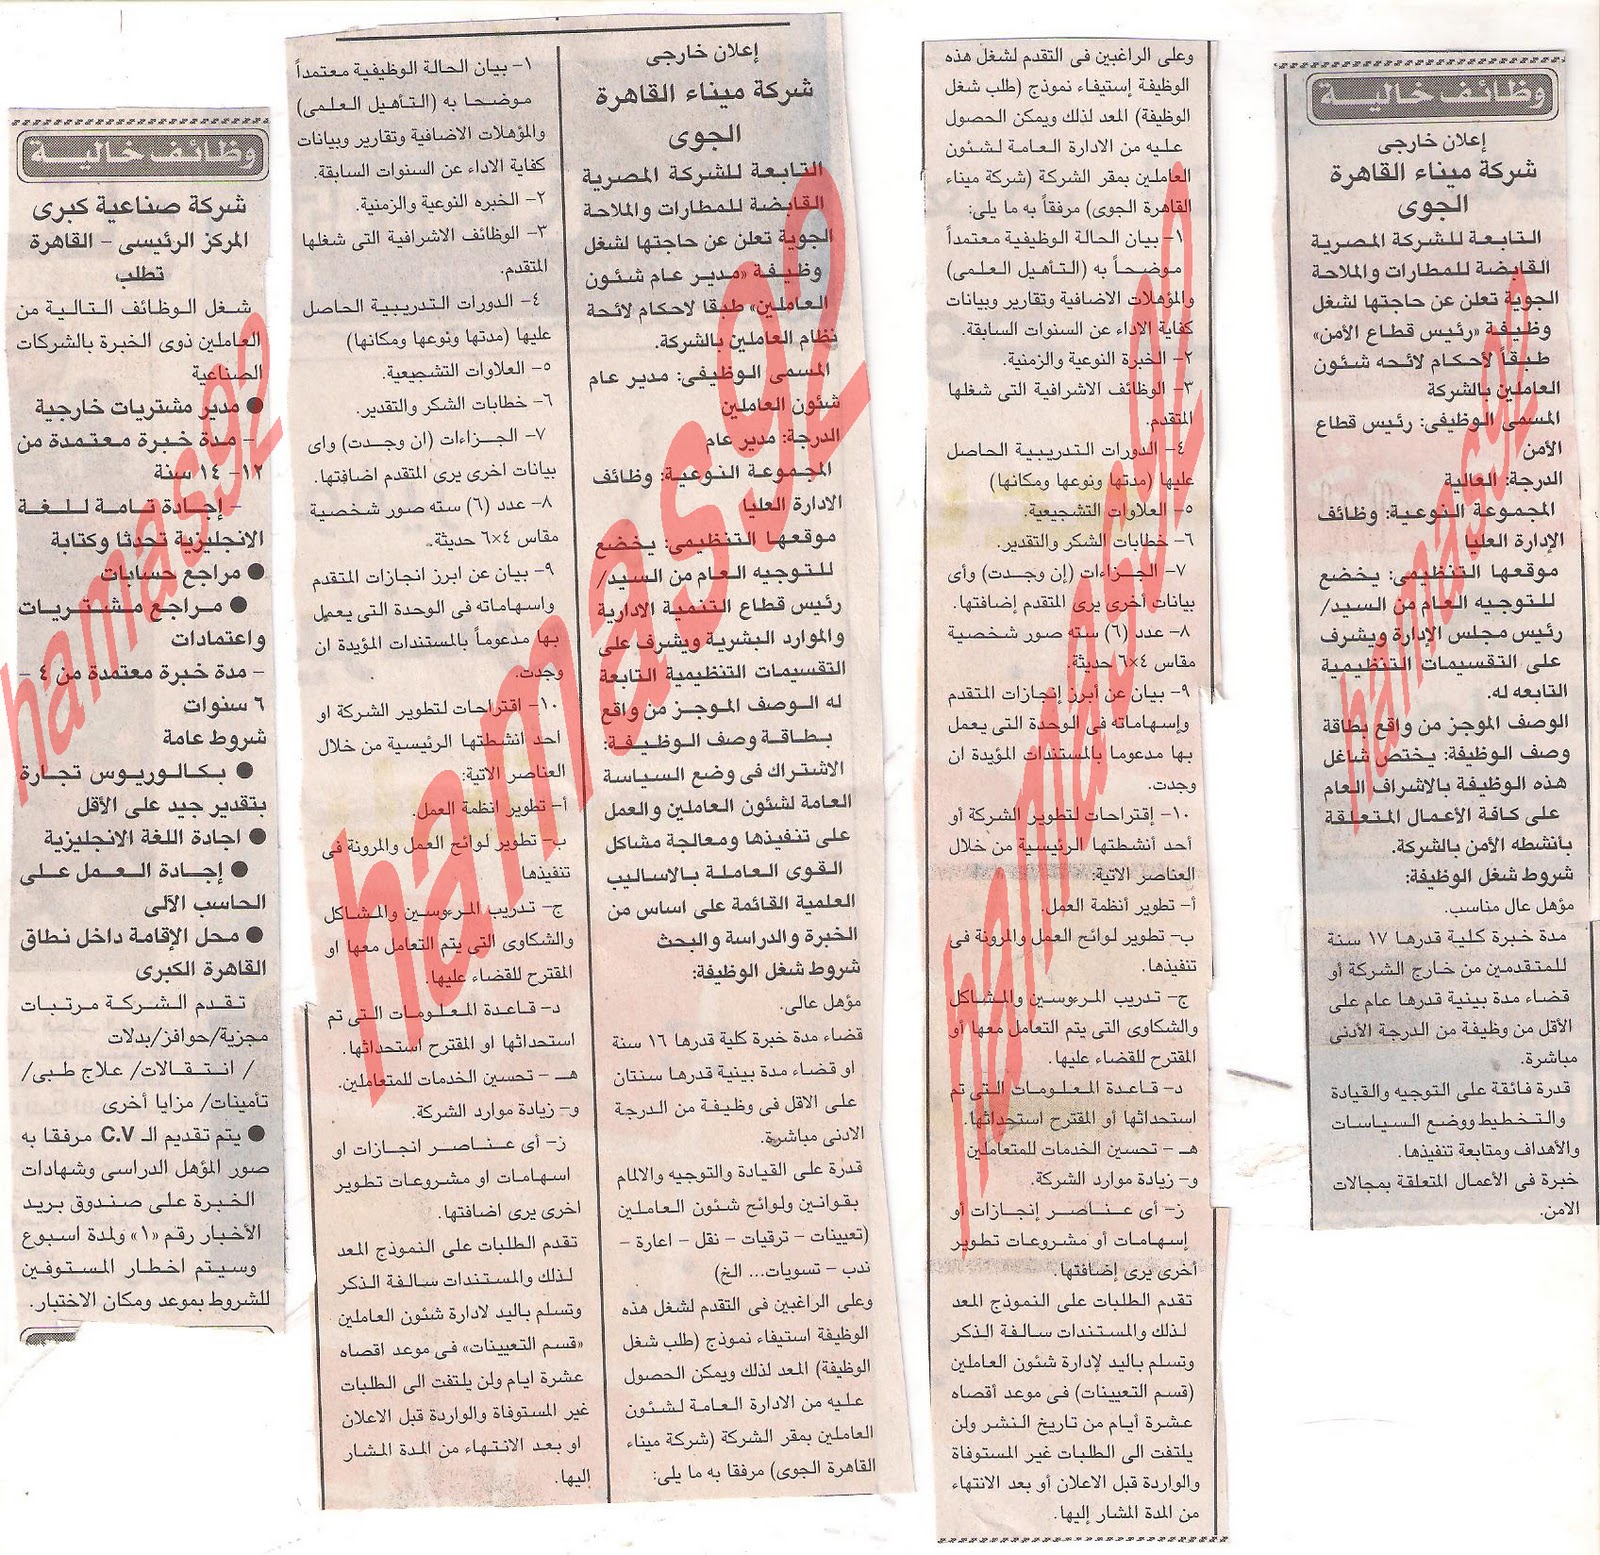 وظائف خالية فى مصر من جريدة اخبار اليوم السبت 22/10/2011 Picture+001